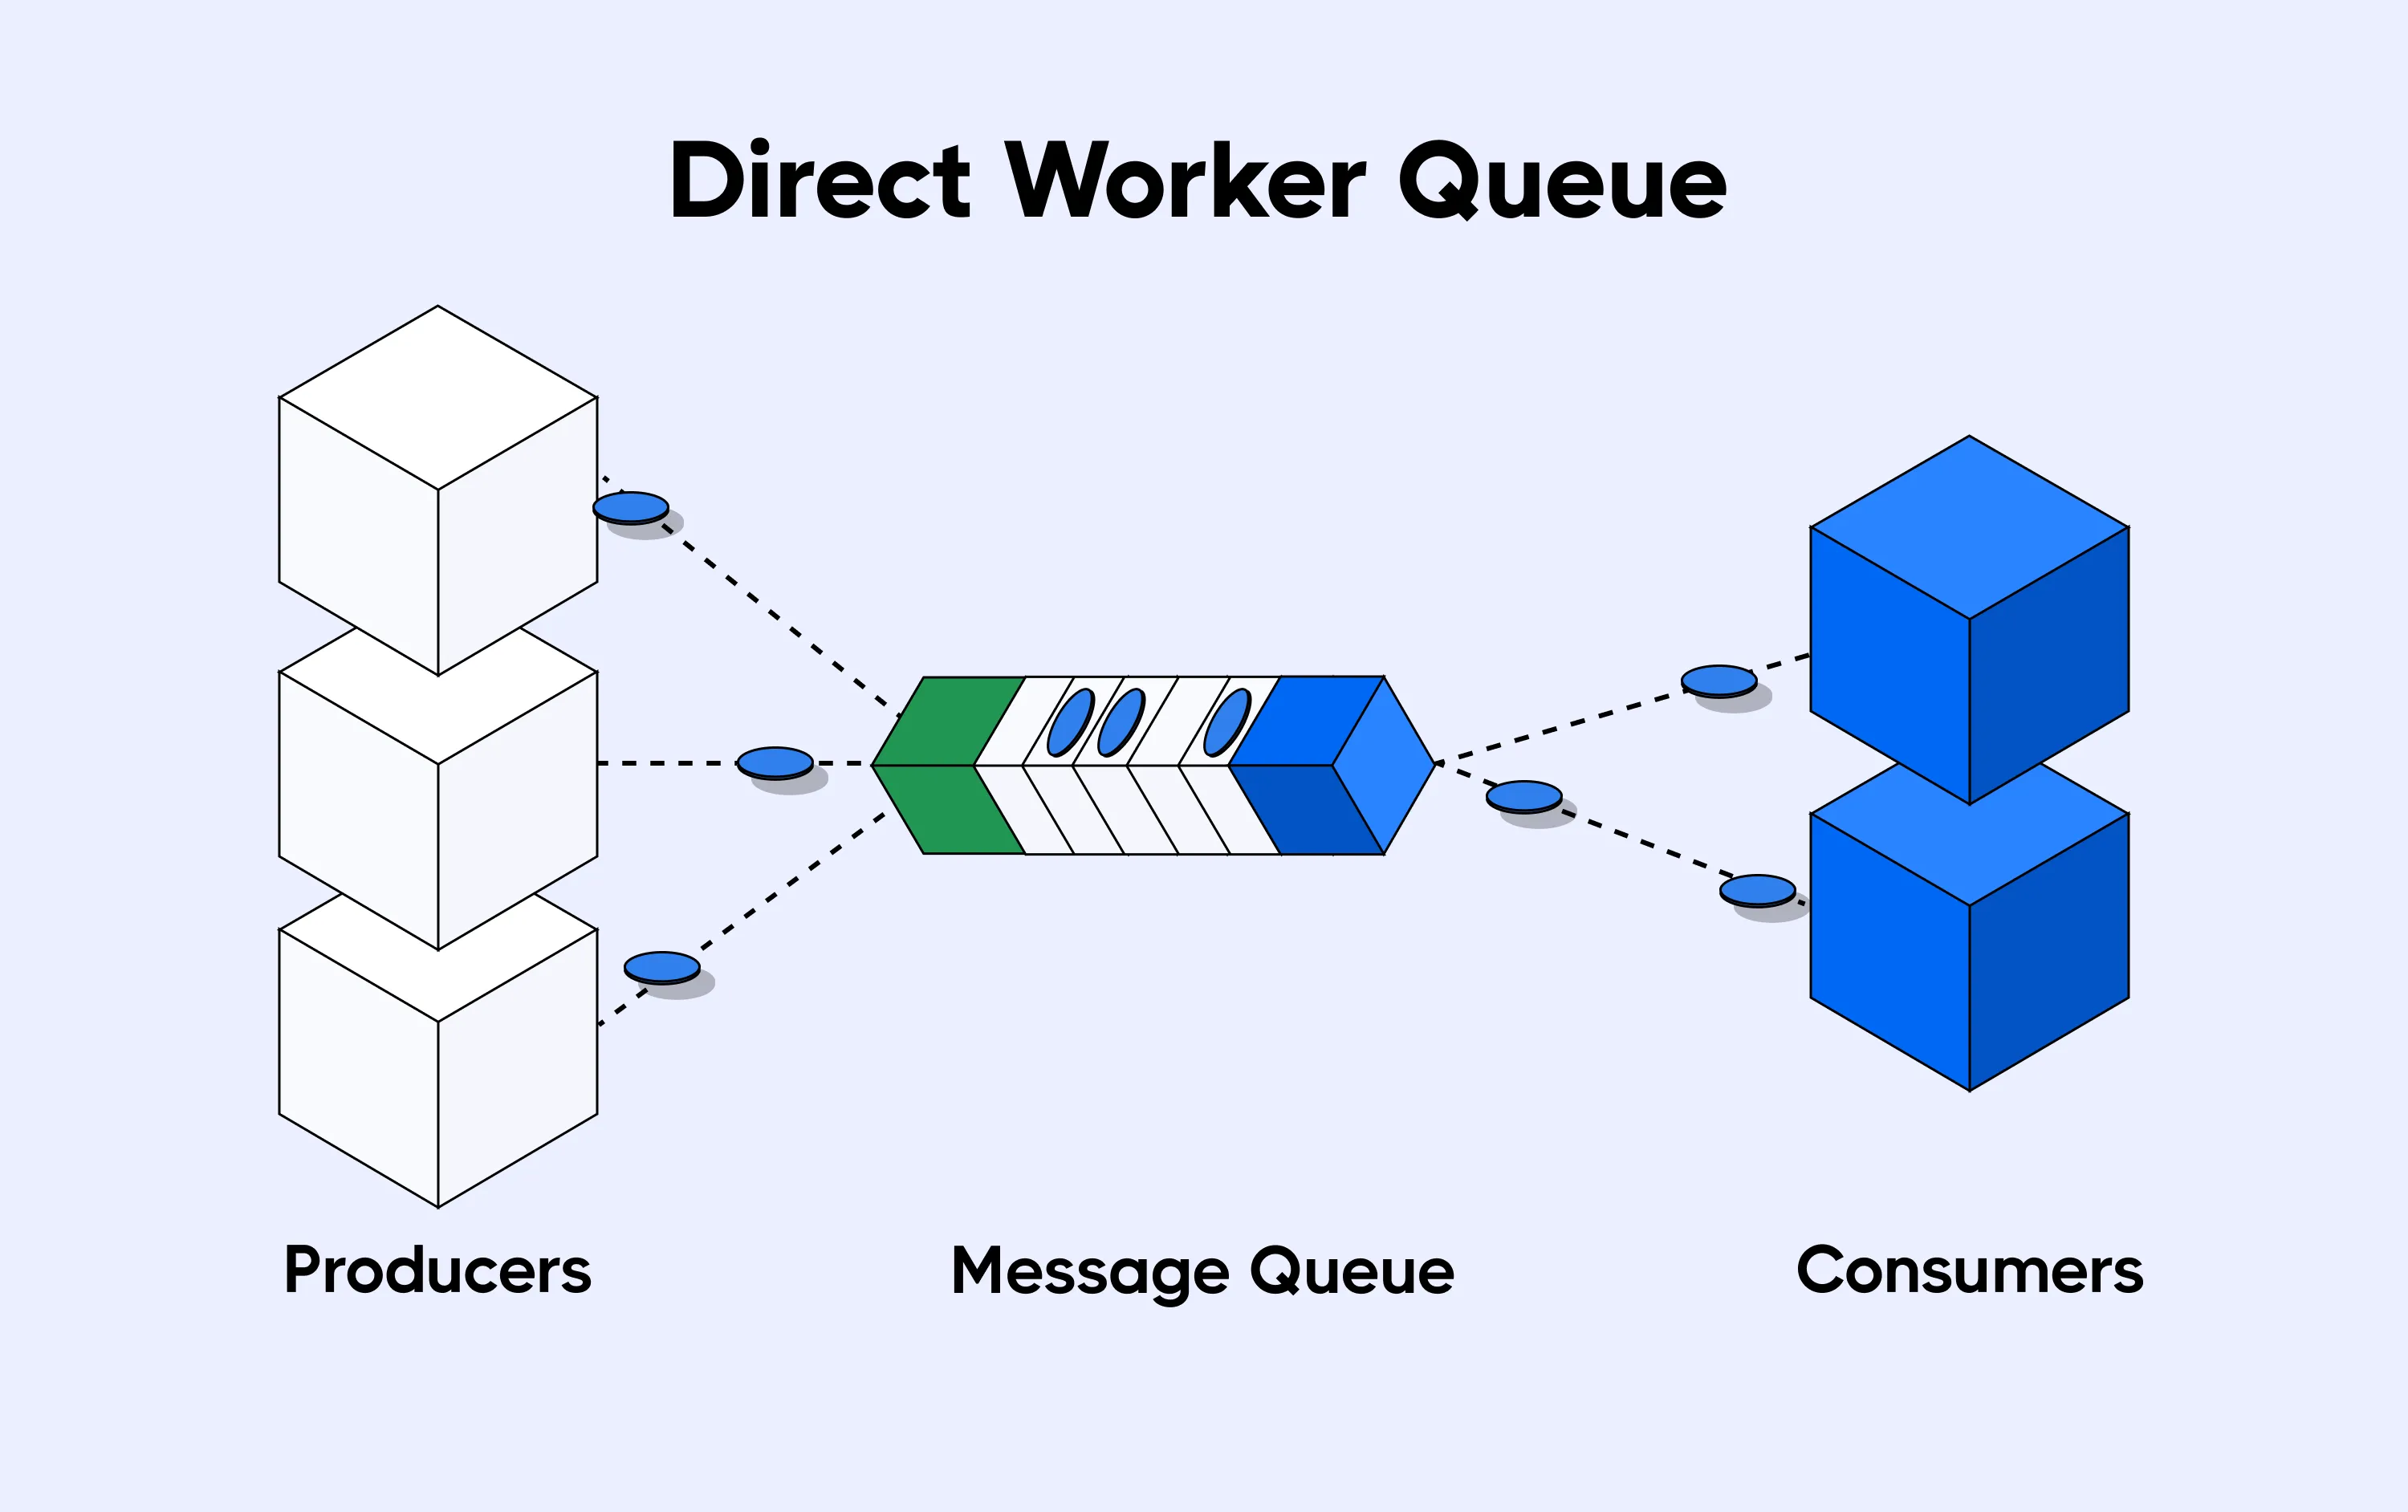 Direct worker queue method